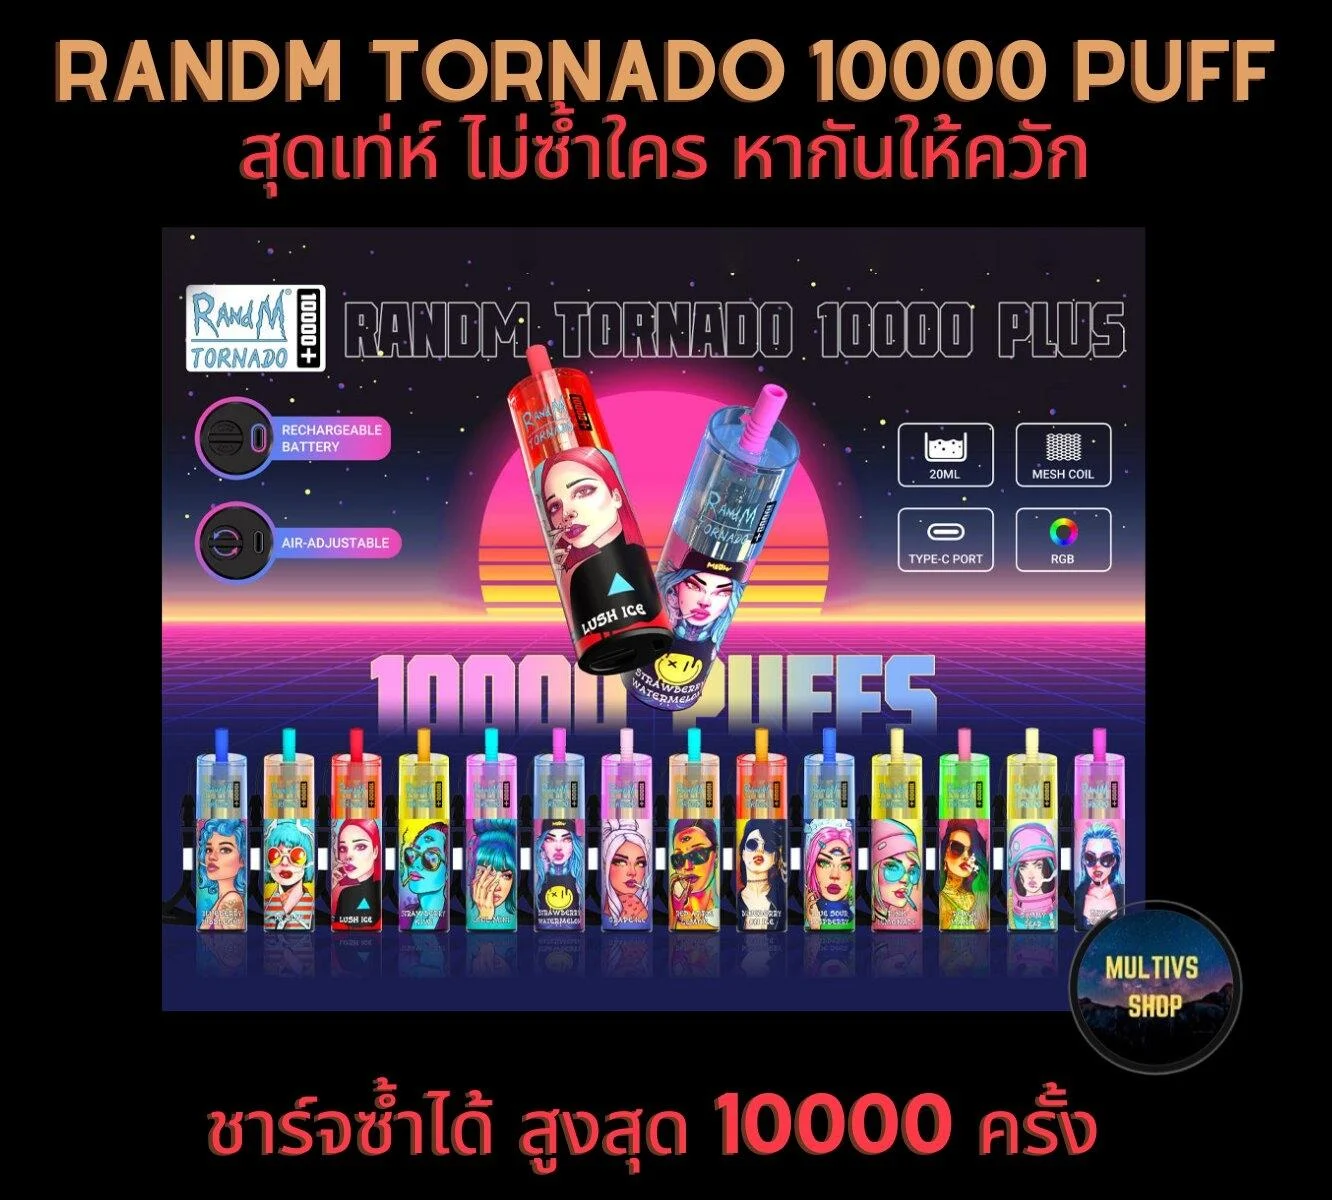 Randm Tornado Plus 10000 Puff